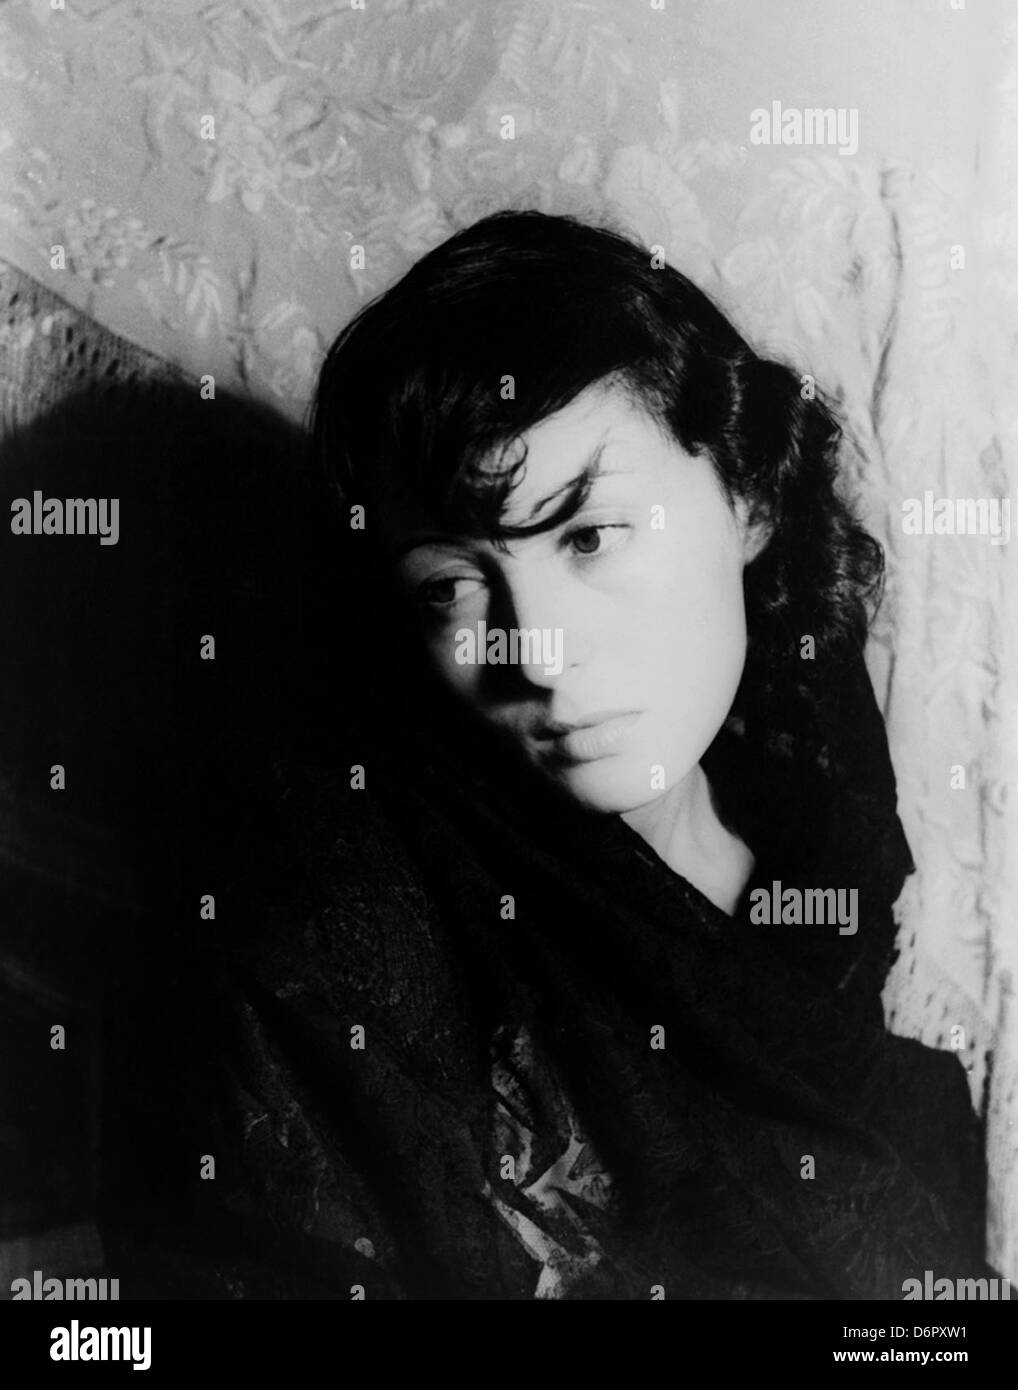 Luise Rainer by Carl Van Vechten, 1937 Stock Photo